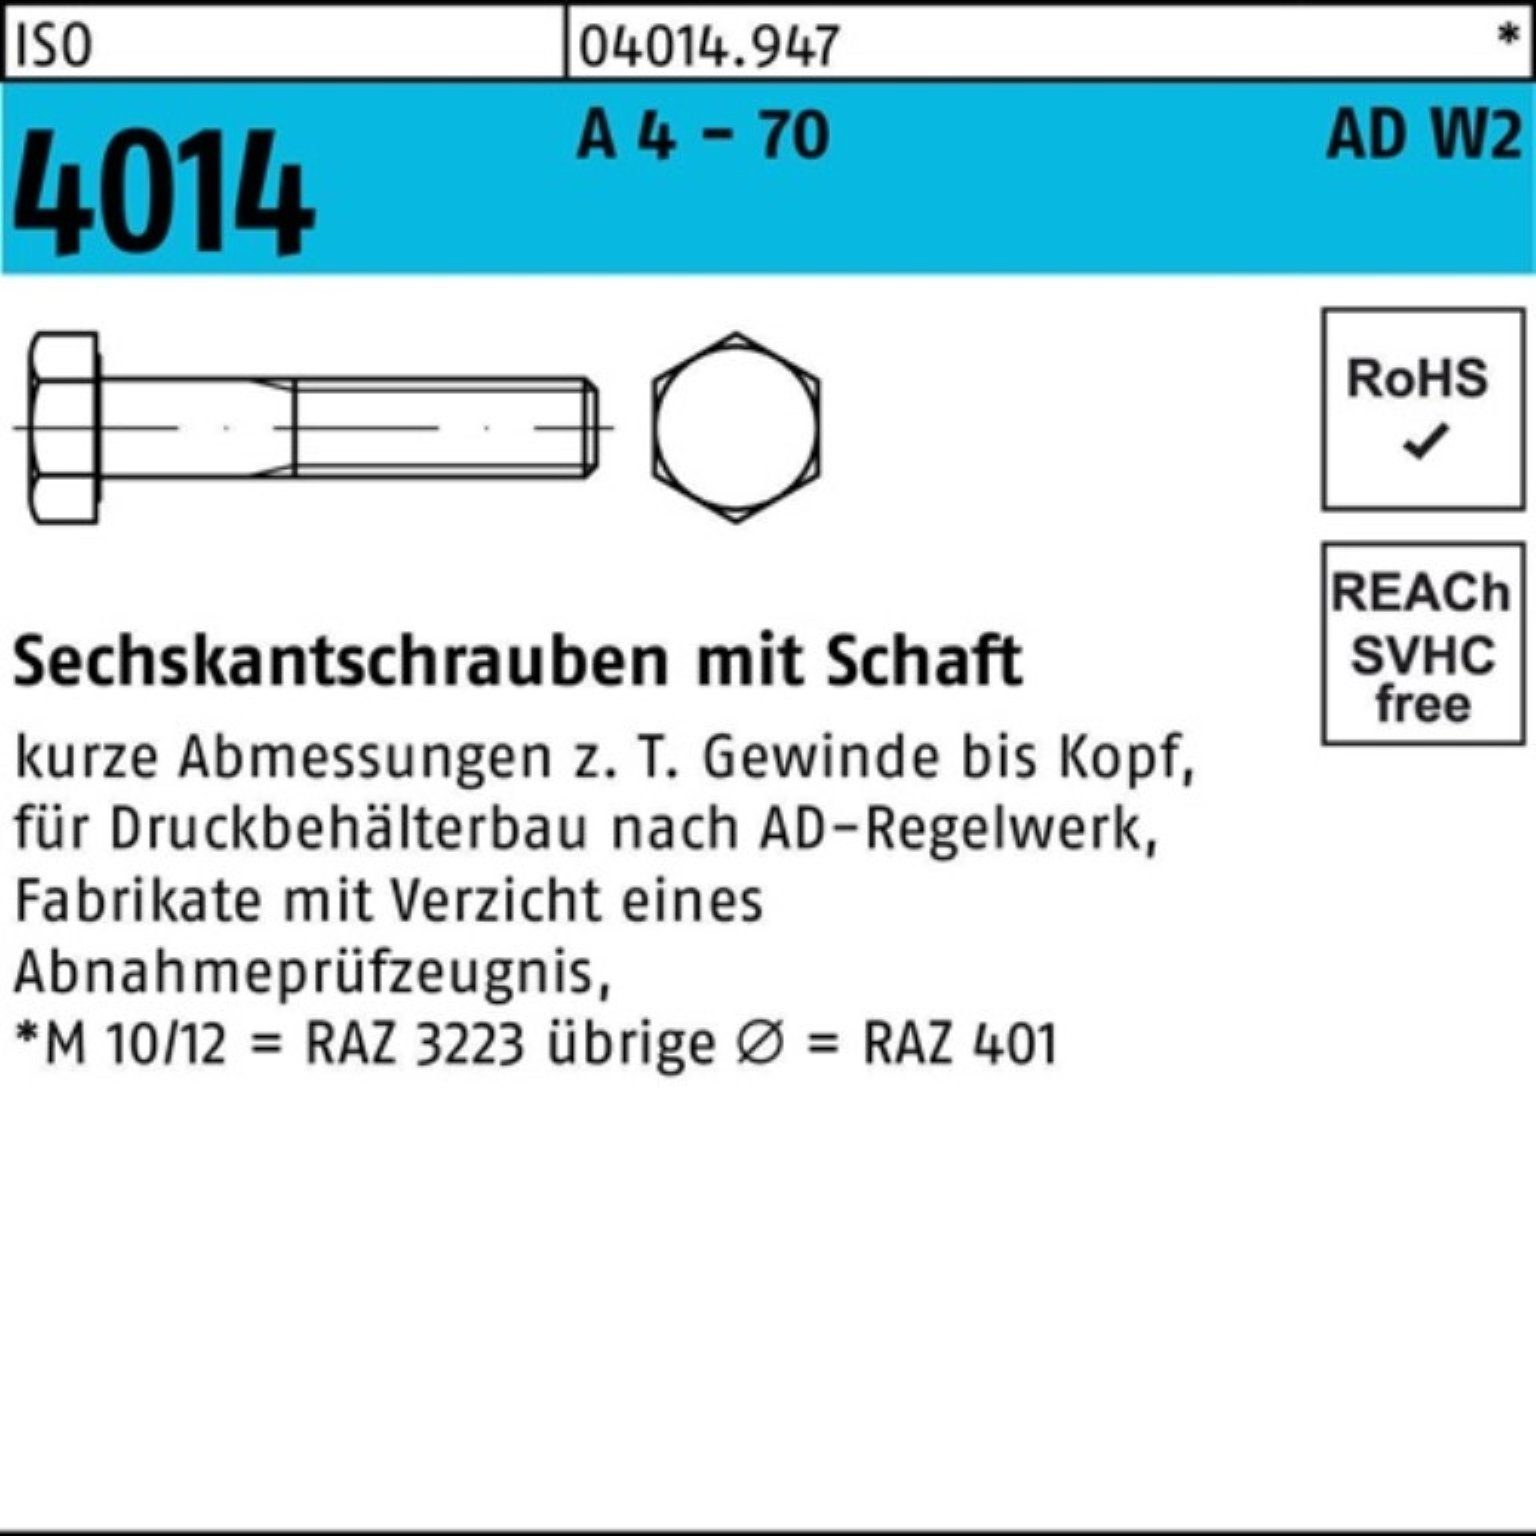 Bufab Sechskantschraube 100er Pack Sechskantschraube ISO 4014 Schaft M16x 130 A 4 - 70 AD-W2 1